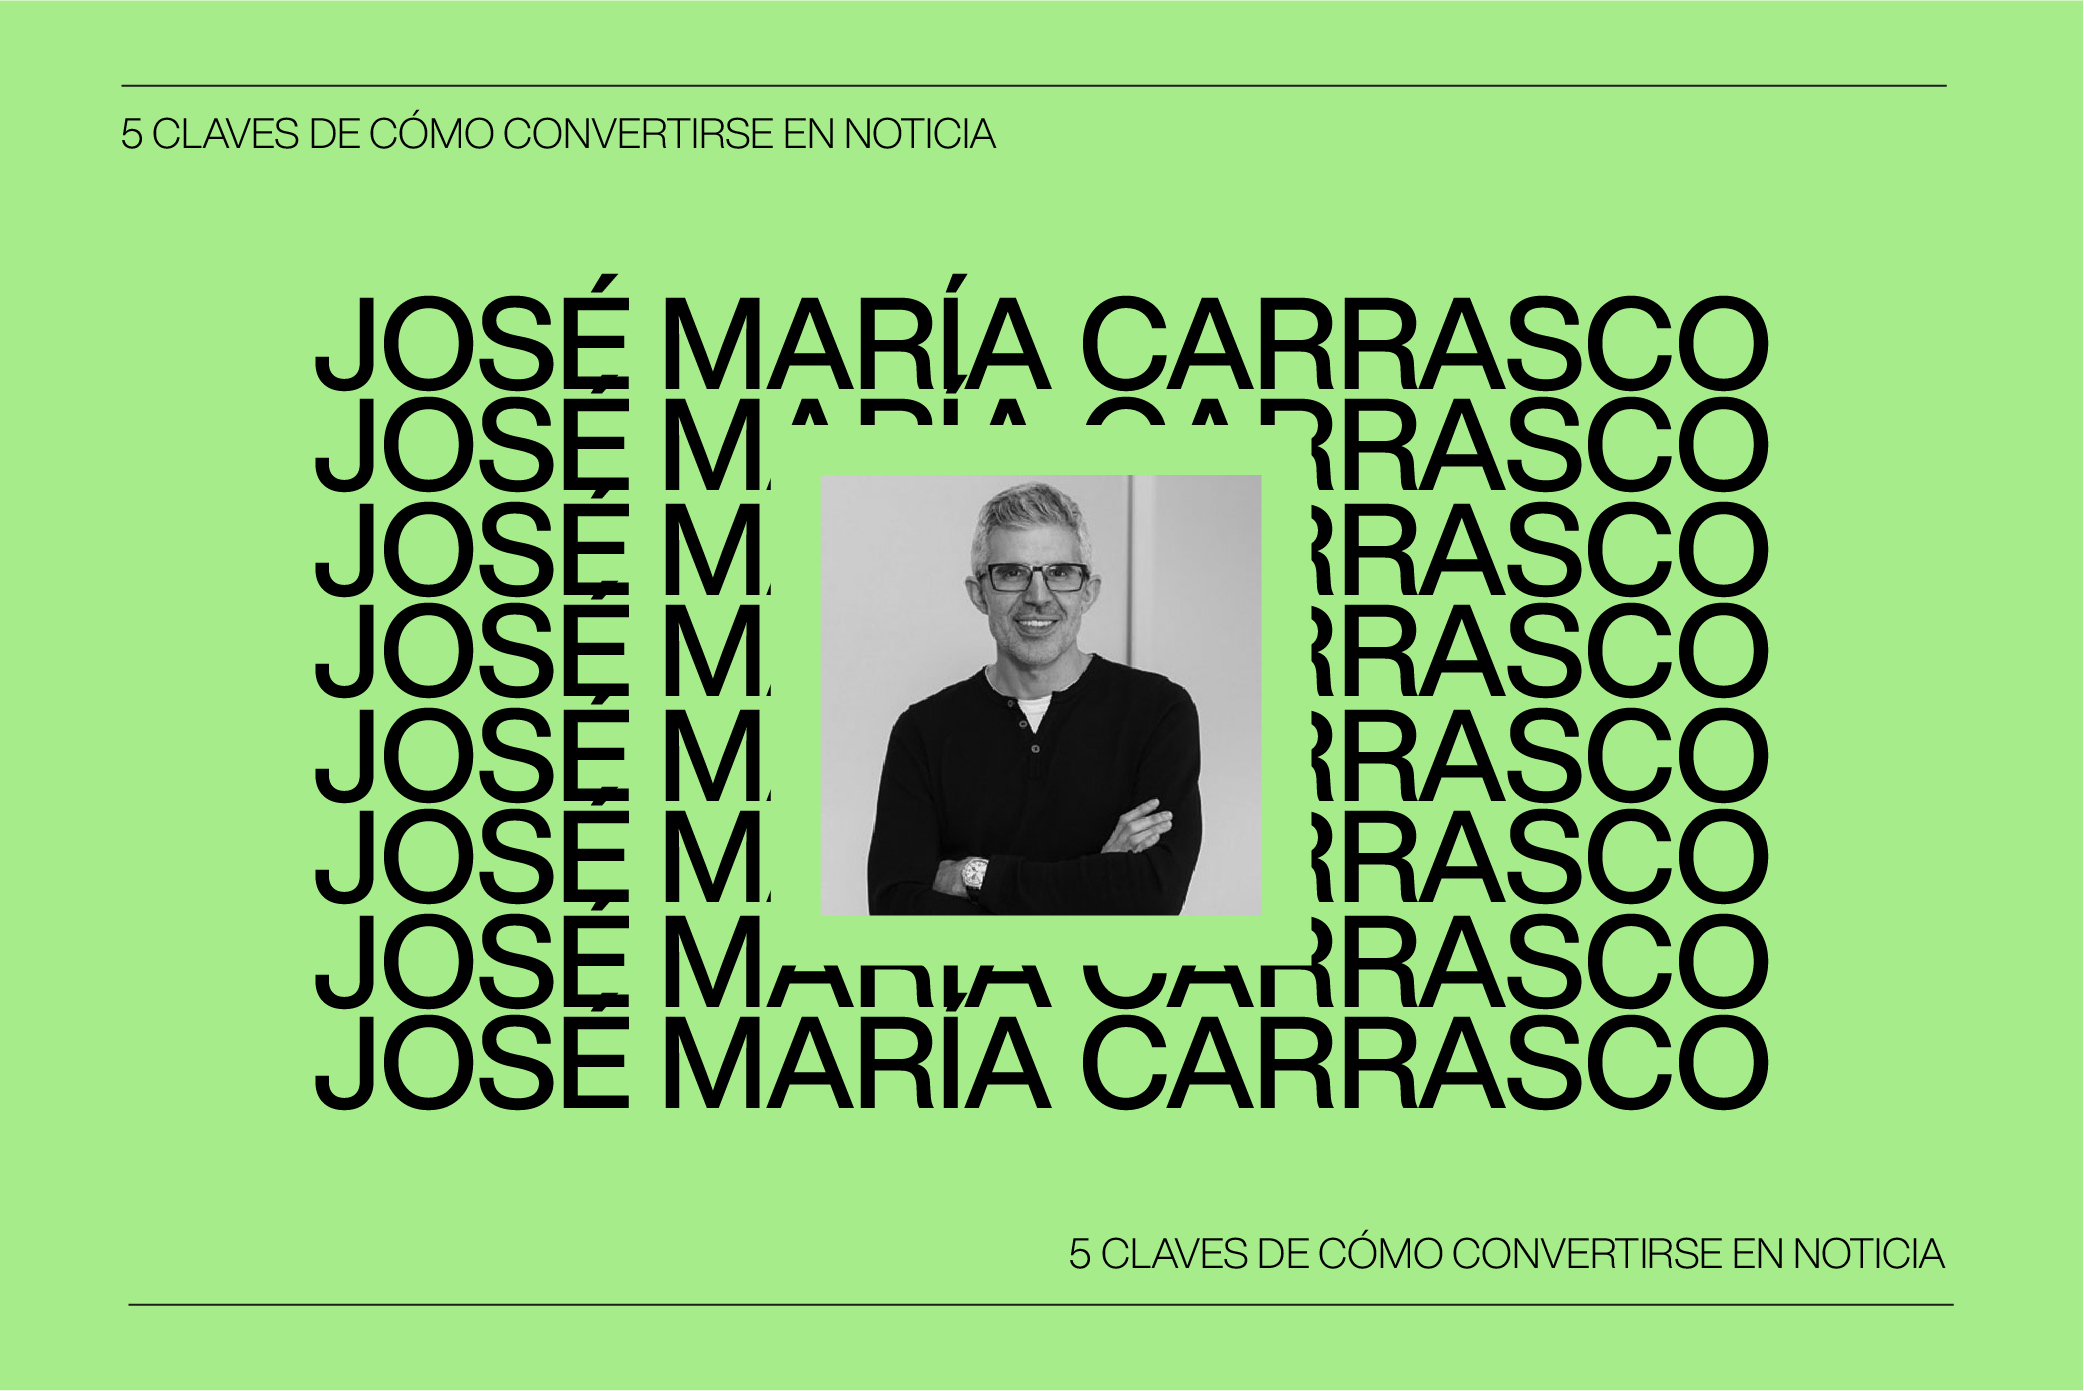 Las 5 Claves para Convertirse en Noticia con José María Carrasco, experto en Comunicación y Prensa